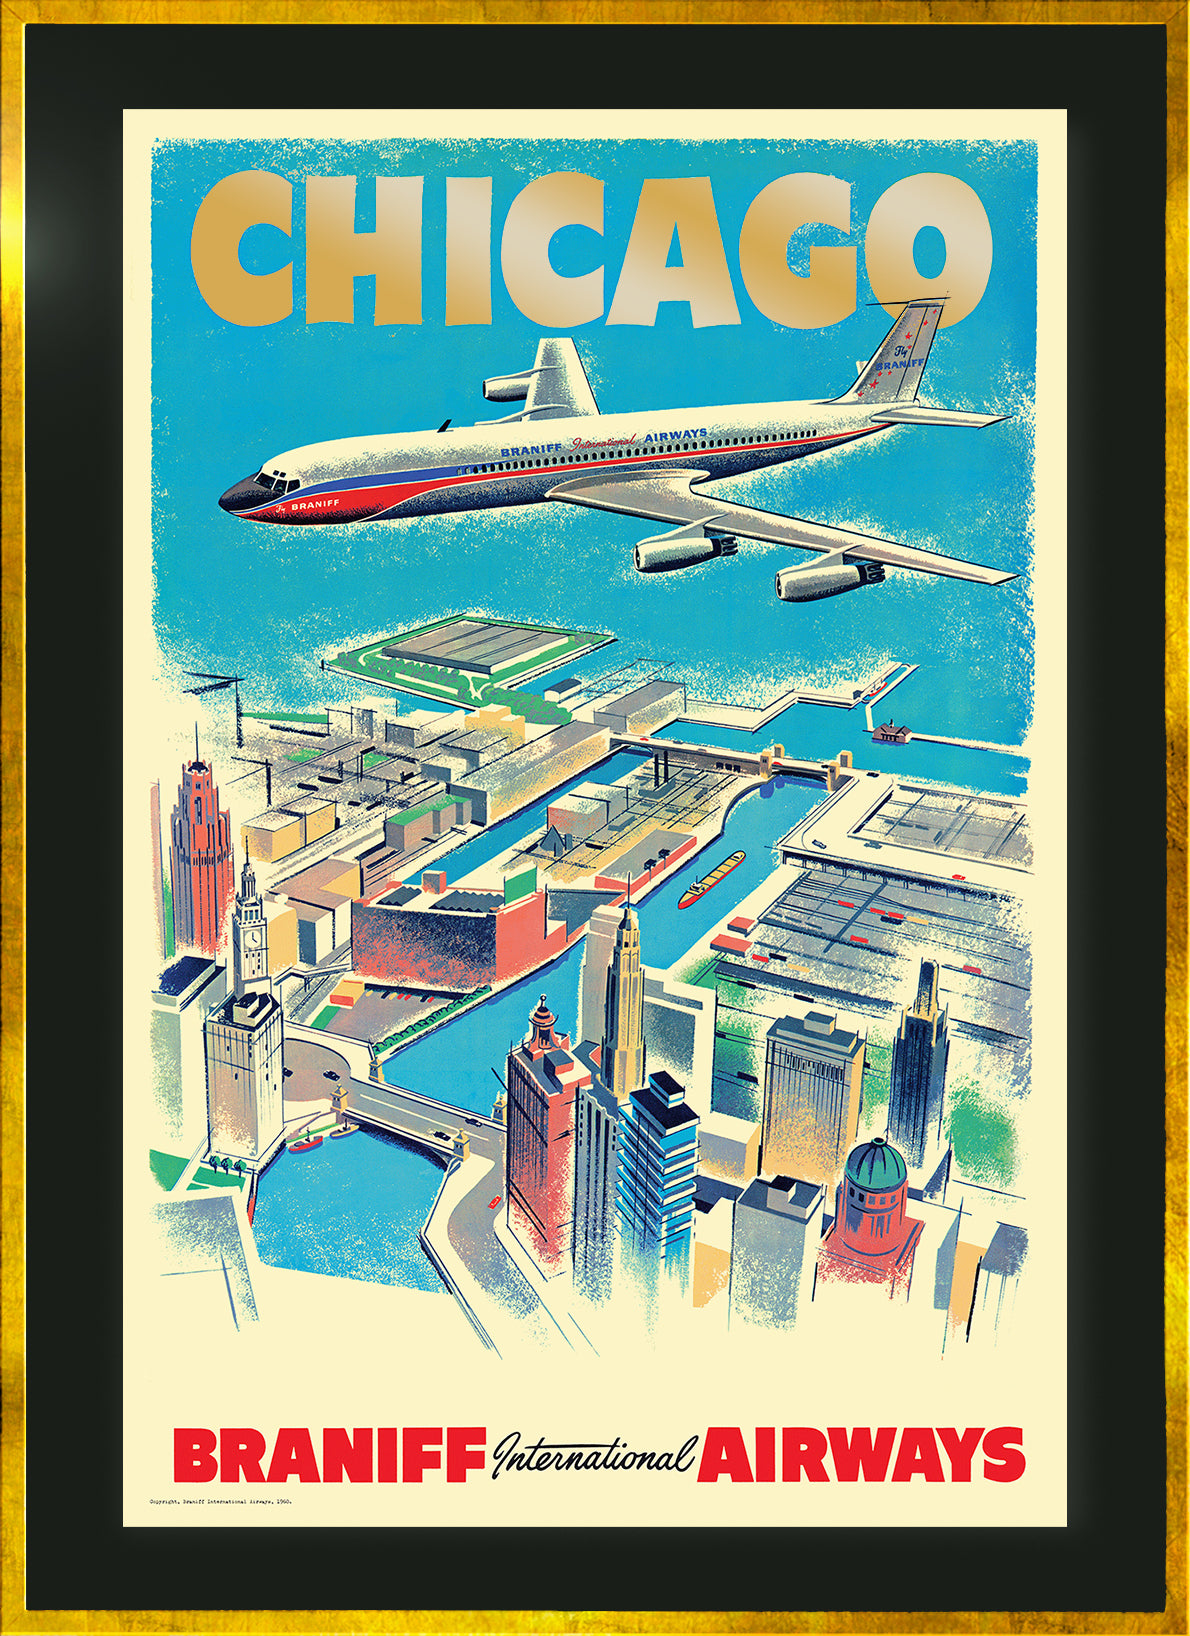 Chicago, Braniff International Airways, 1960s [Aerial View].